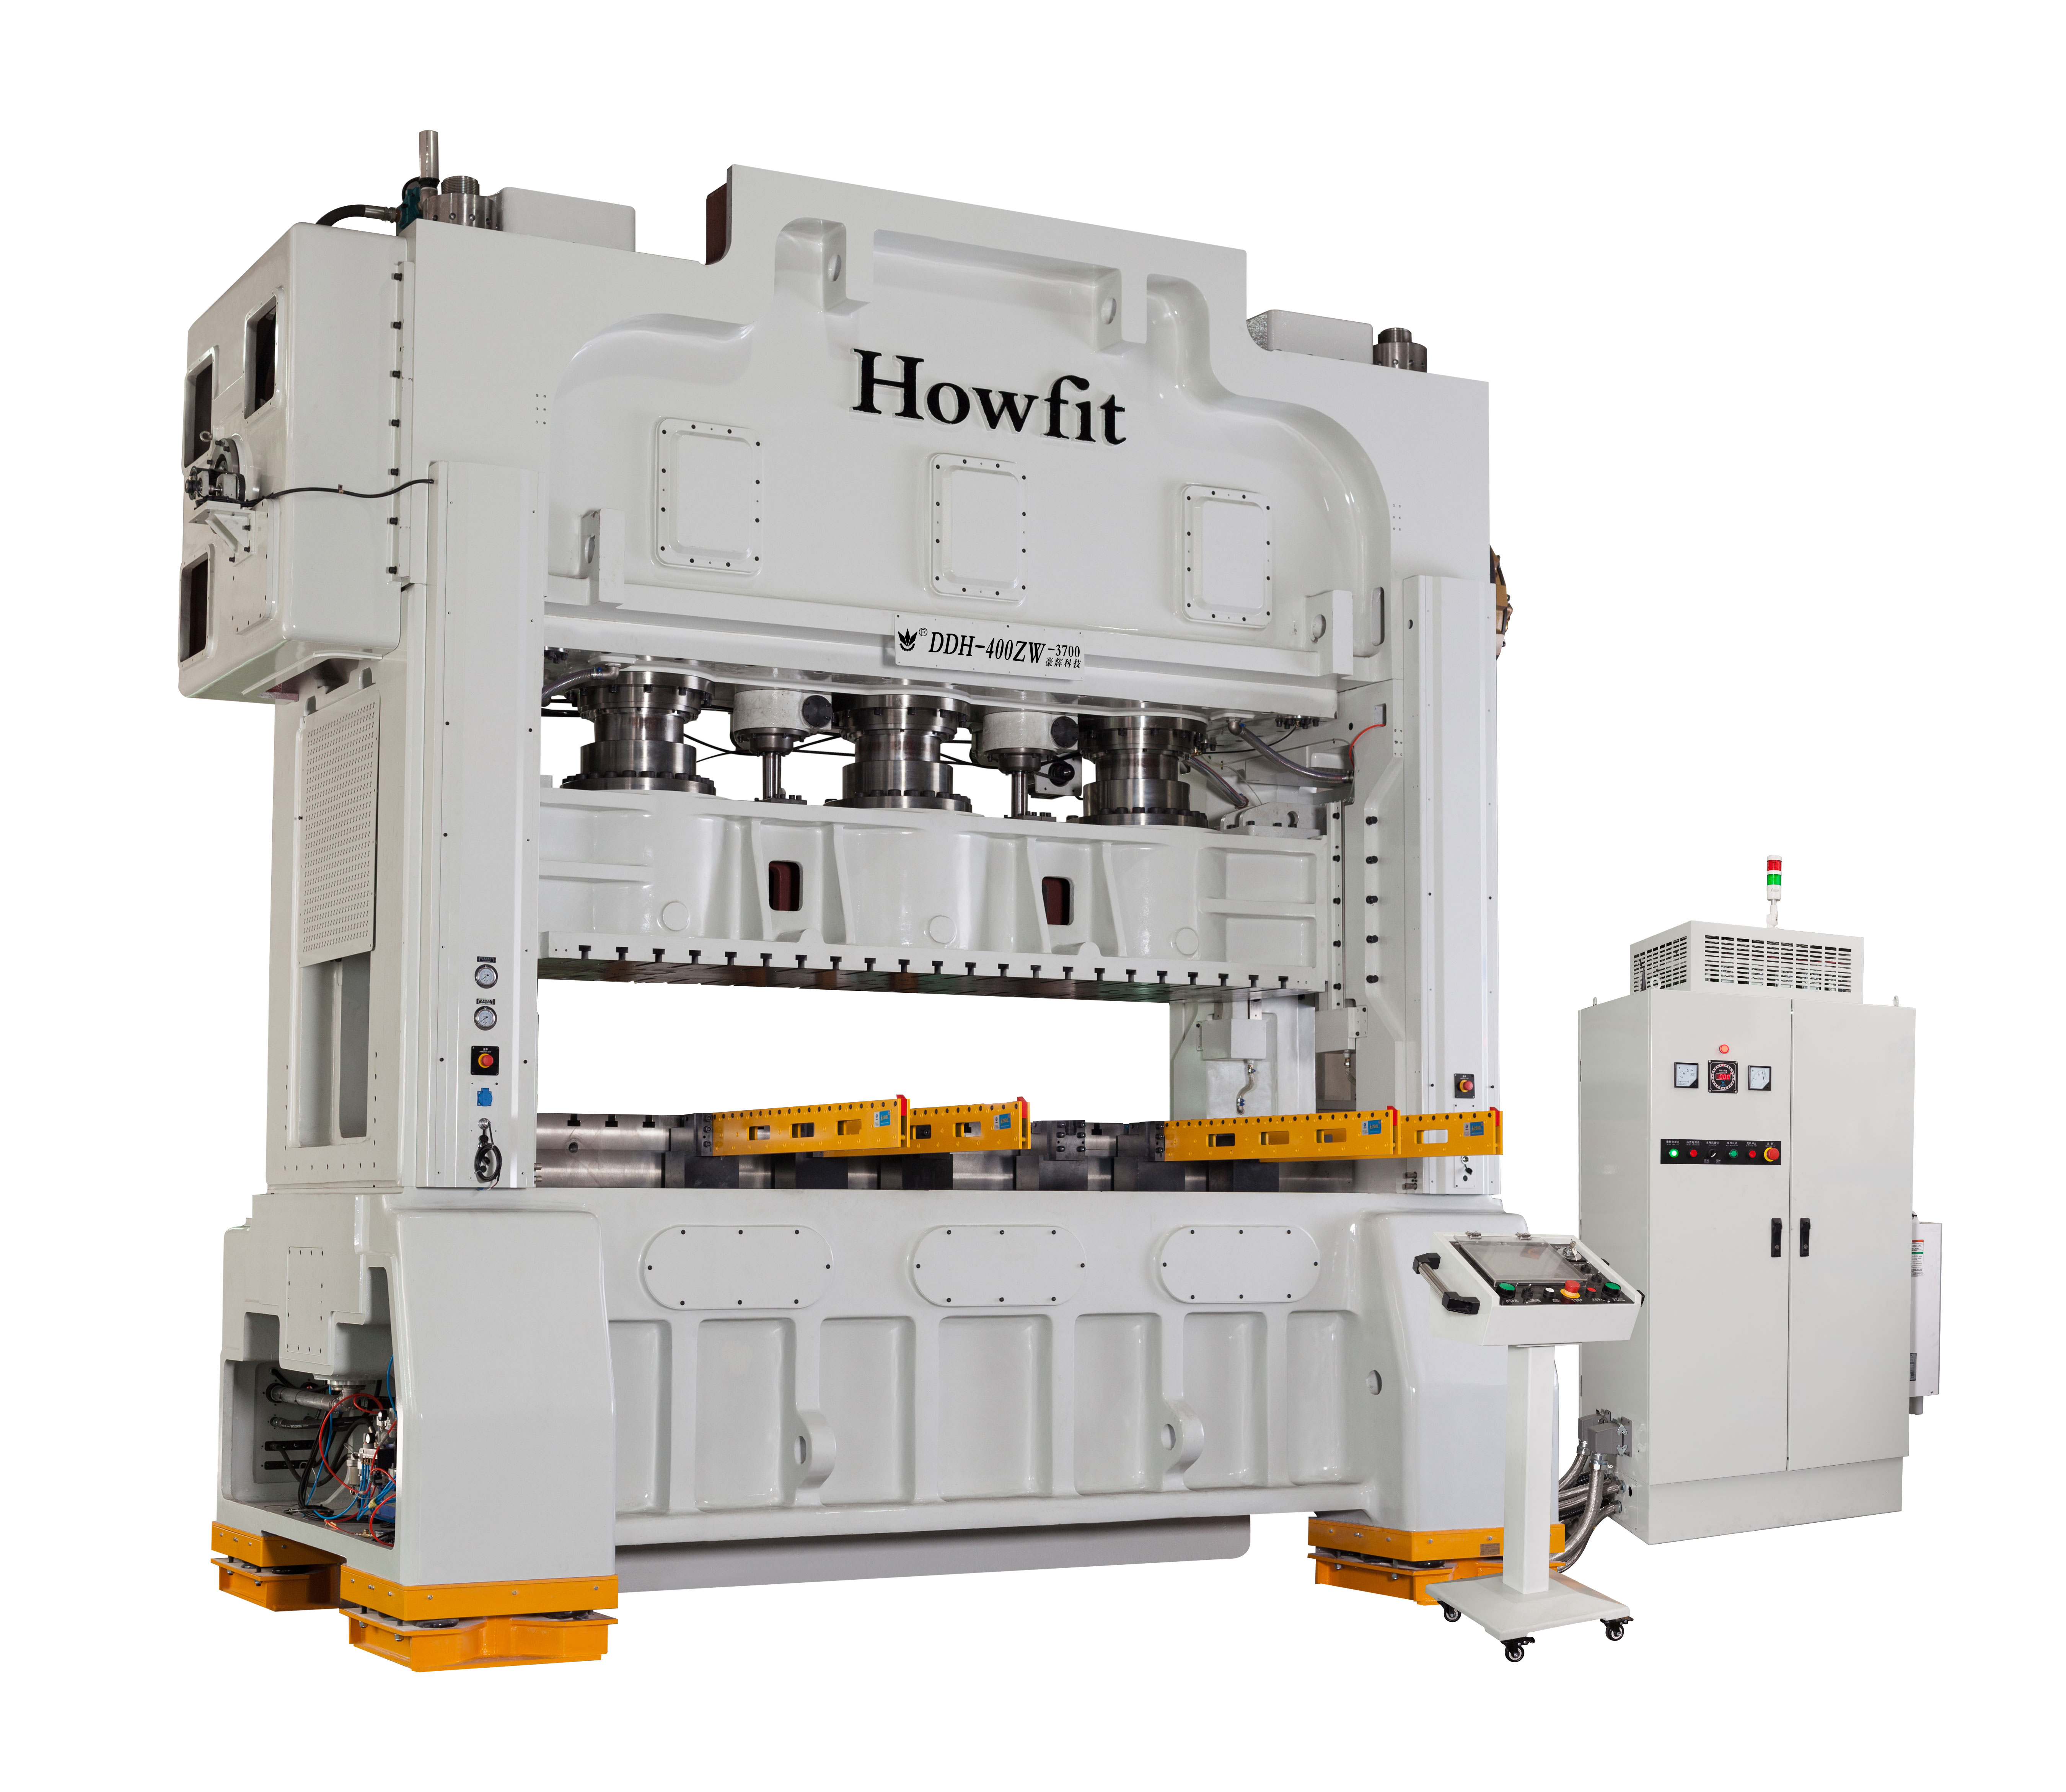 HOWFIT DDH 400T ZW-3700 garantit la qualité de fabrication